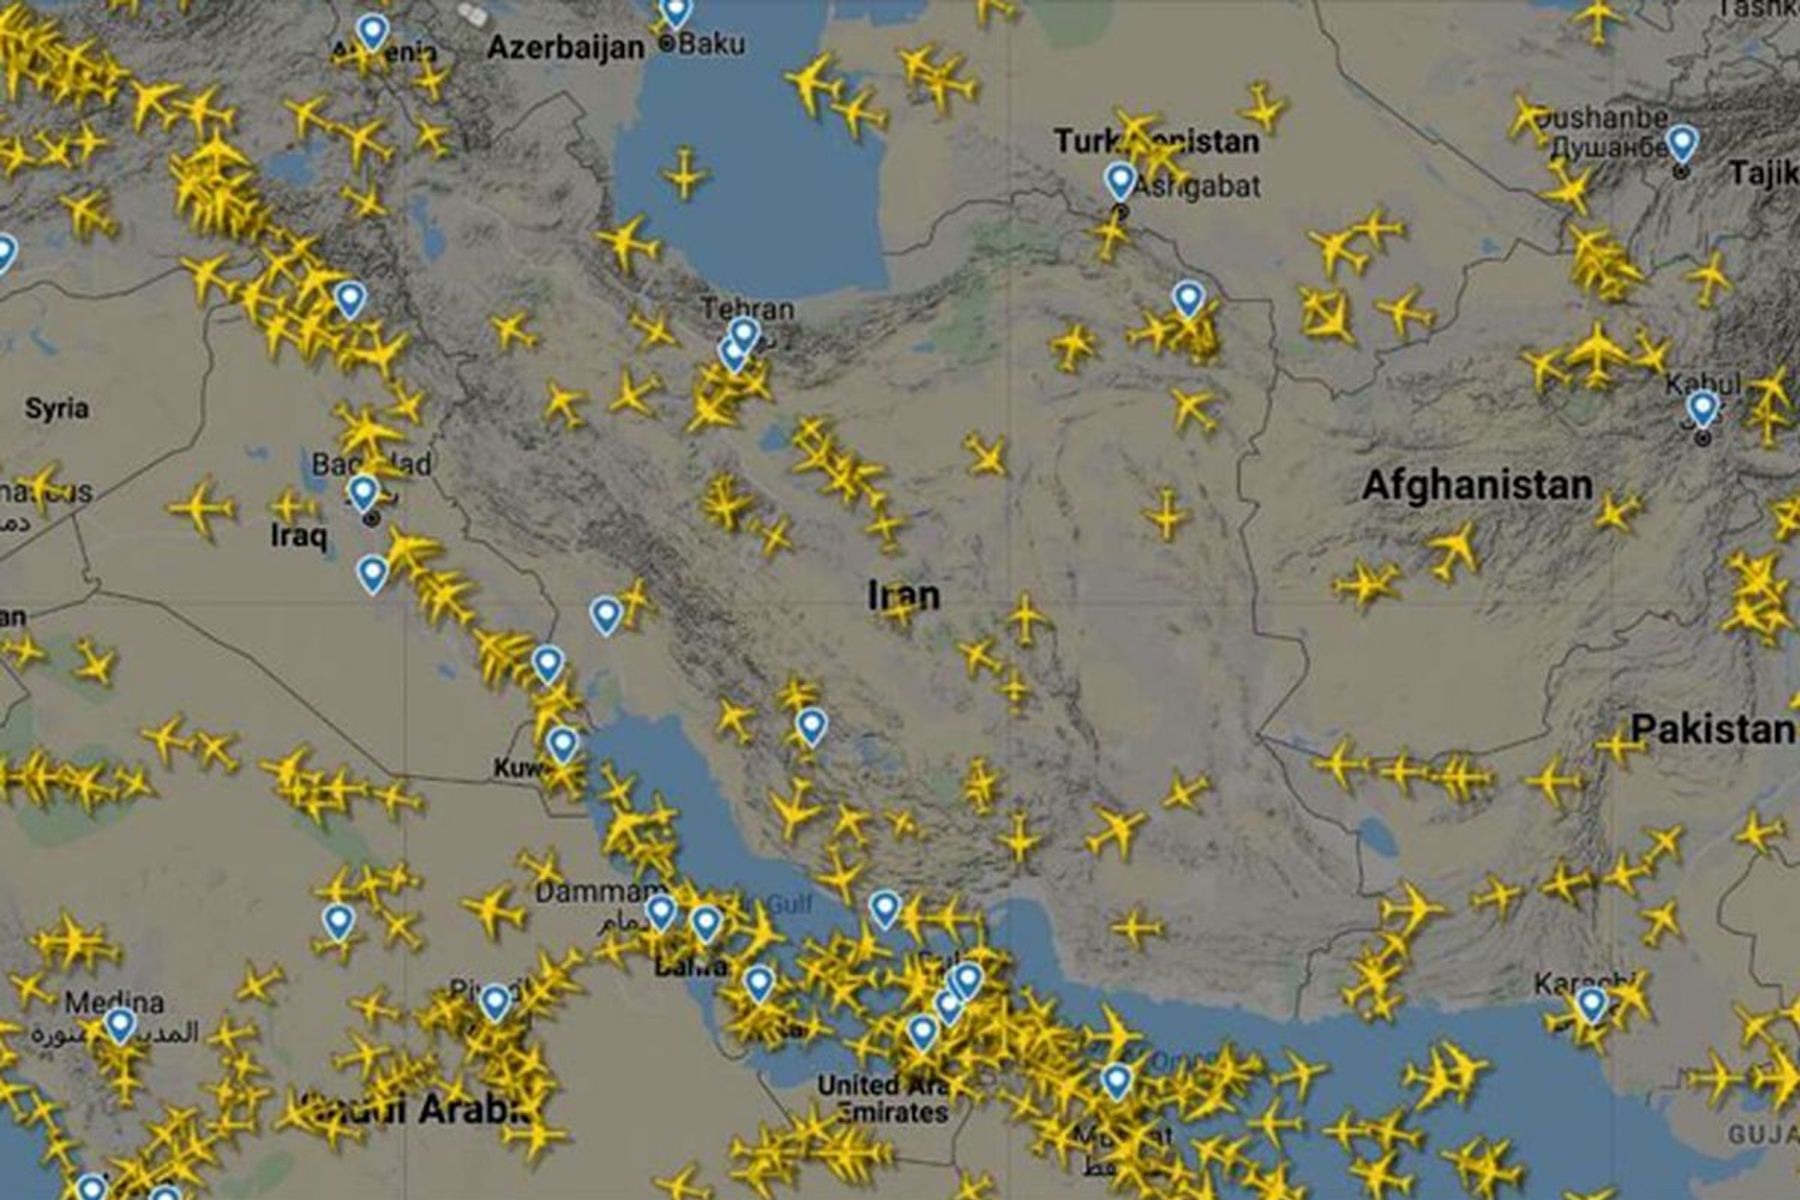 وزیر راه و شهرسازی ایران از کاهش قابل توجه پروازهای عبوری ایران خبر داد